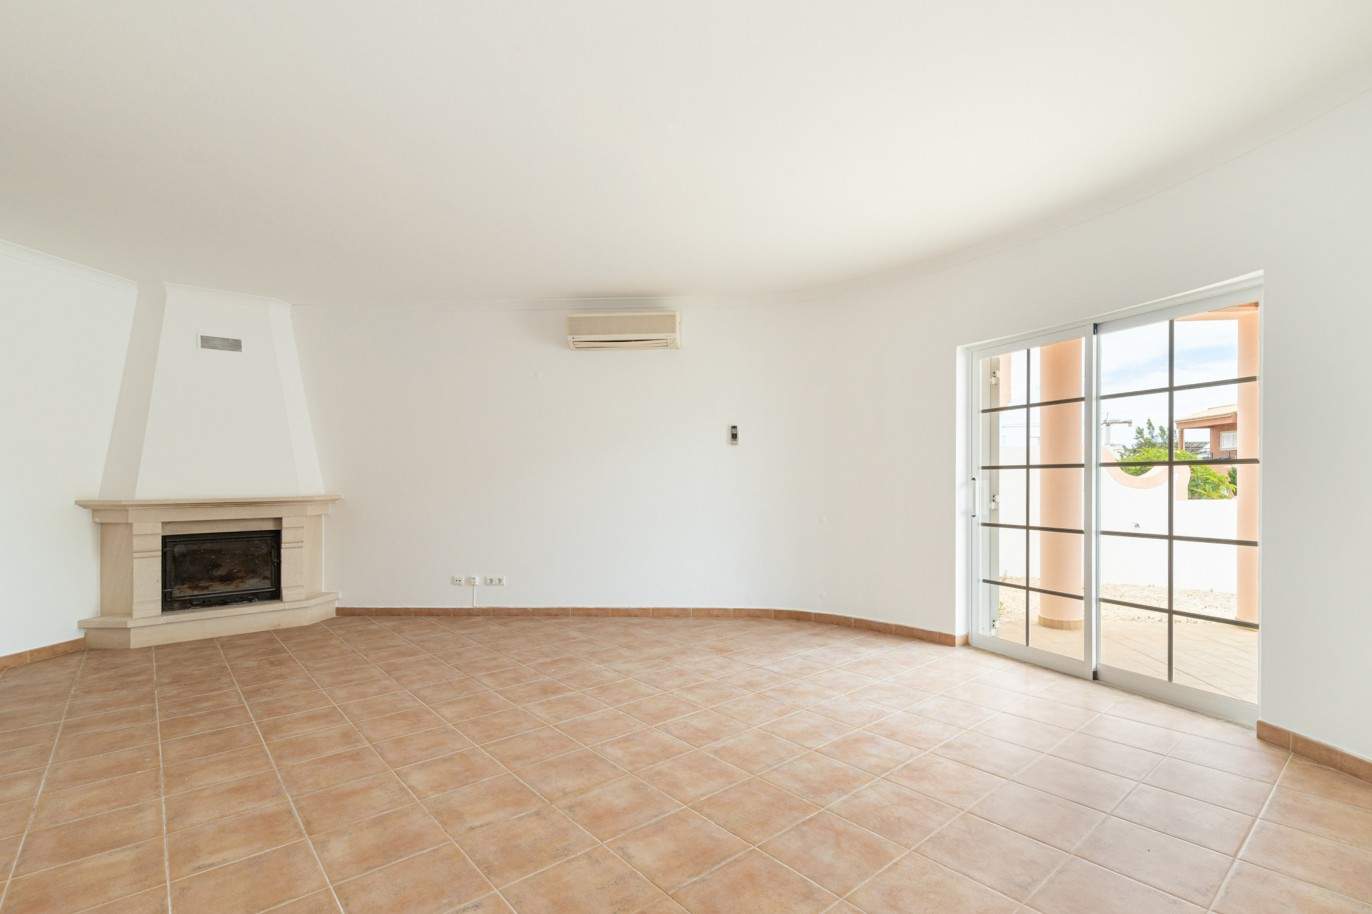 Villa de 3 dormitorios en venta en Porto de Mós, Lagos, Algarve_201768